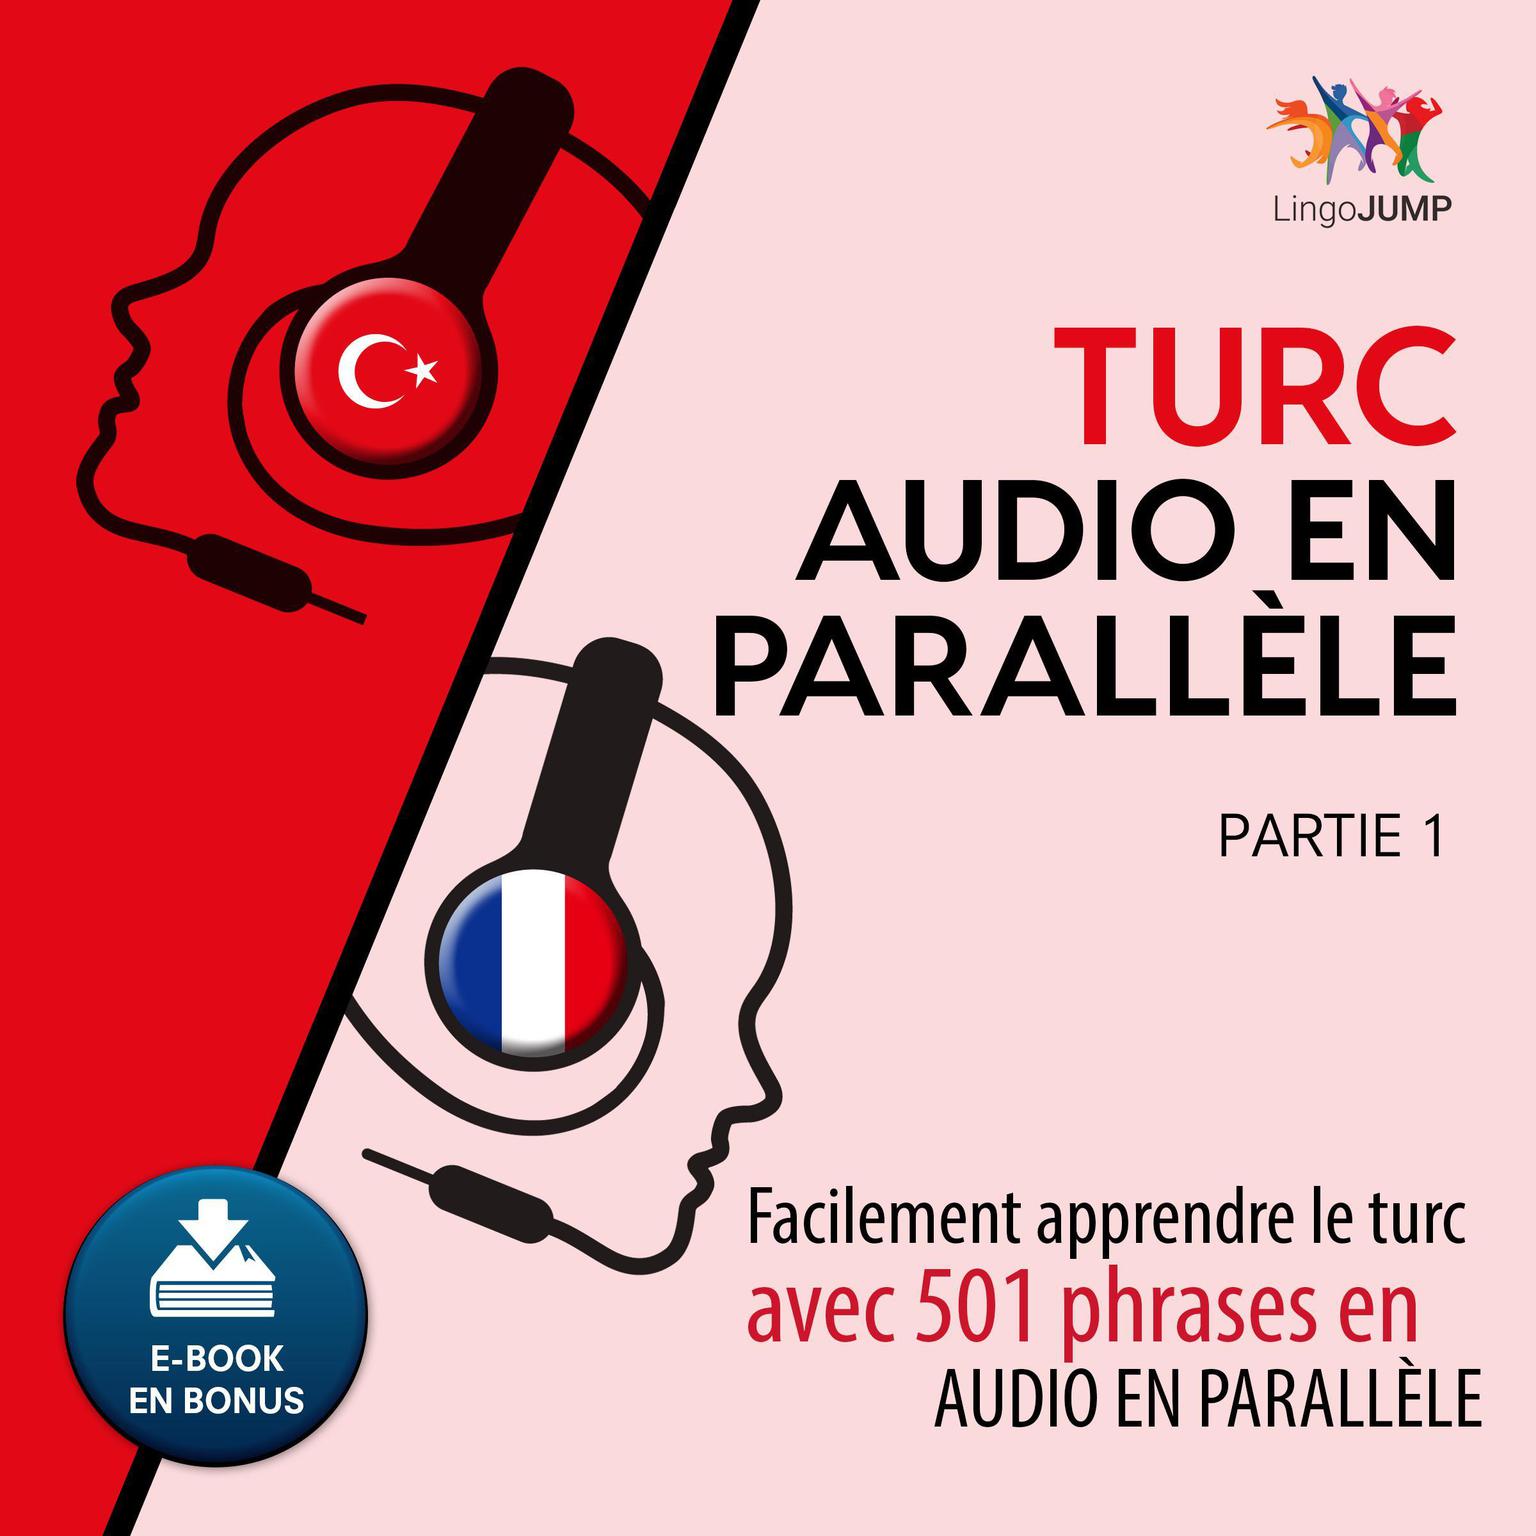 Turc audio en parallle - Facilement apprendre le turcavec 501 phrases en audio en parallle - Partie 1 Audiobook, by Lingo Jump